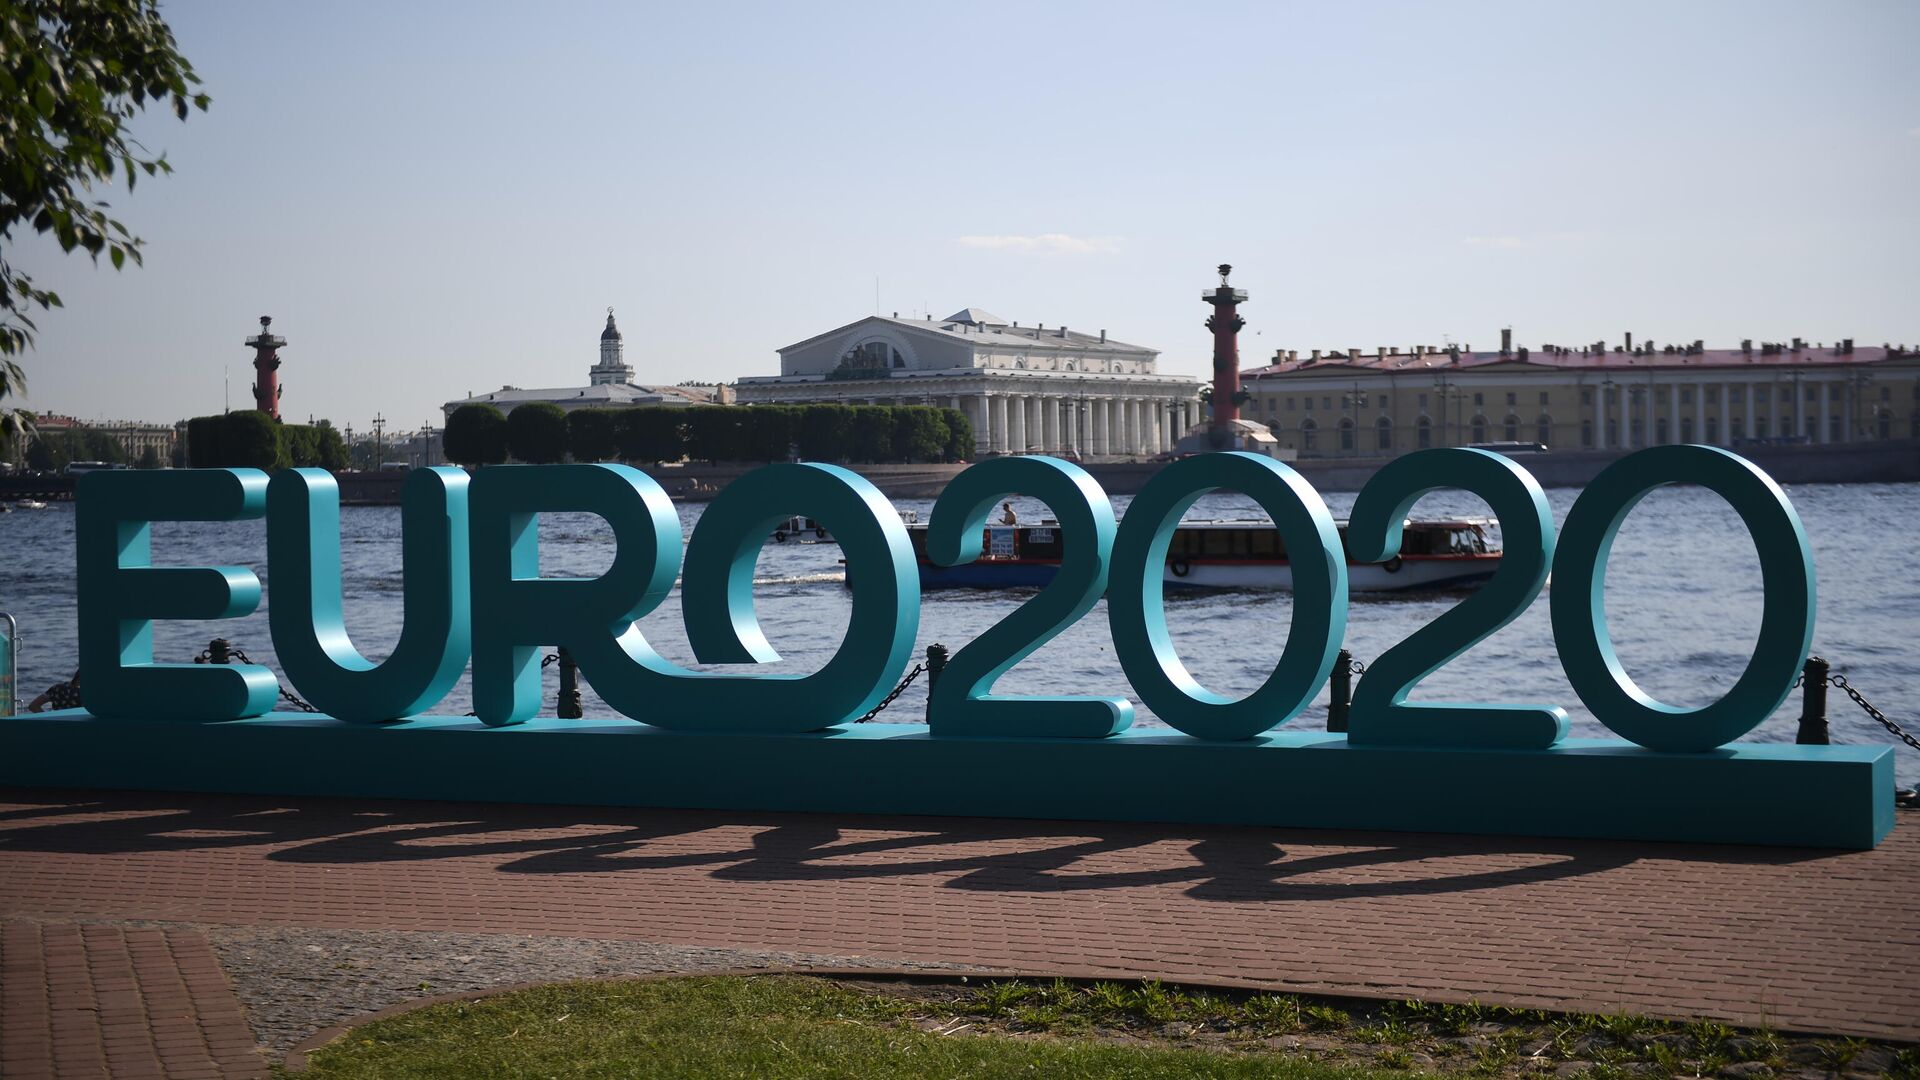 Открытие парка футбола Евро-2020 в Санкт-Петербурге  - РИА Новости, 1920, 16.10.2020